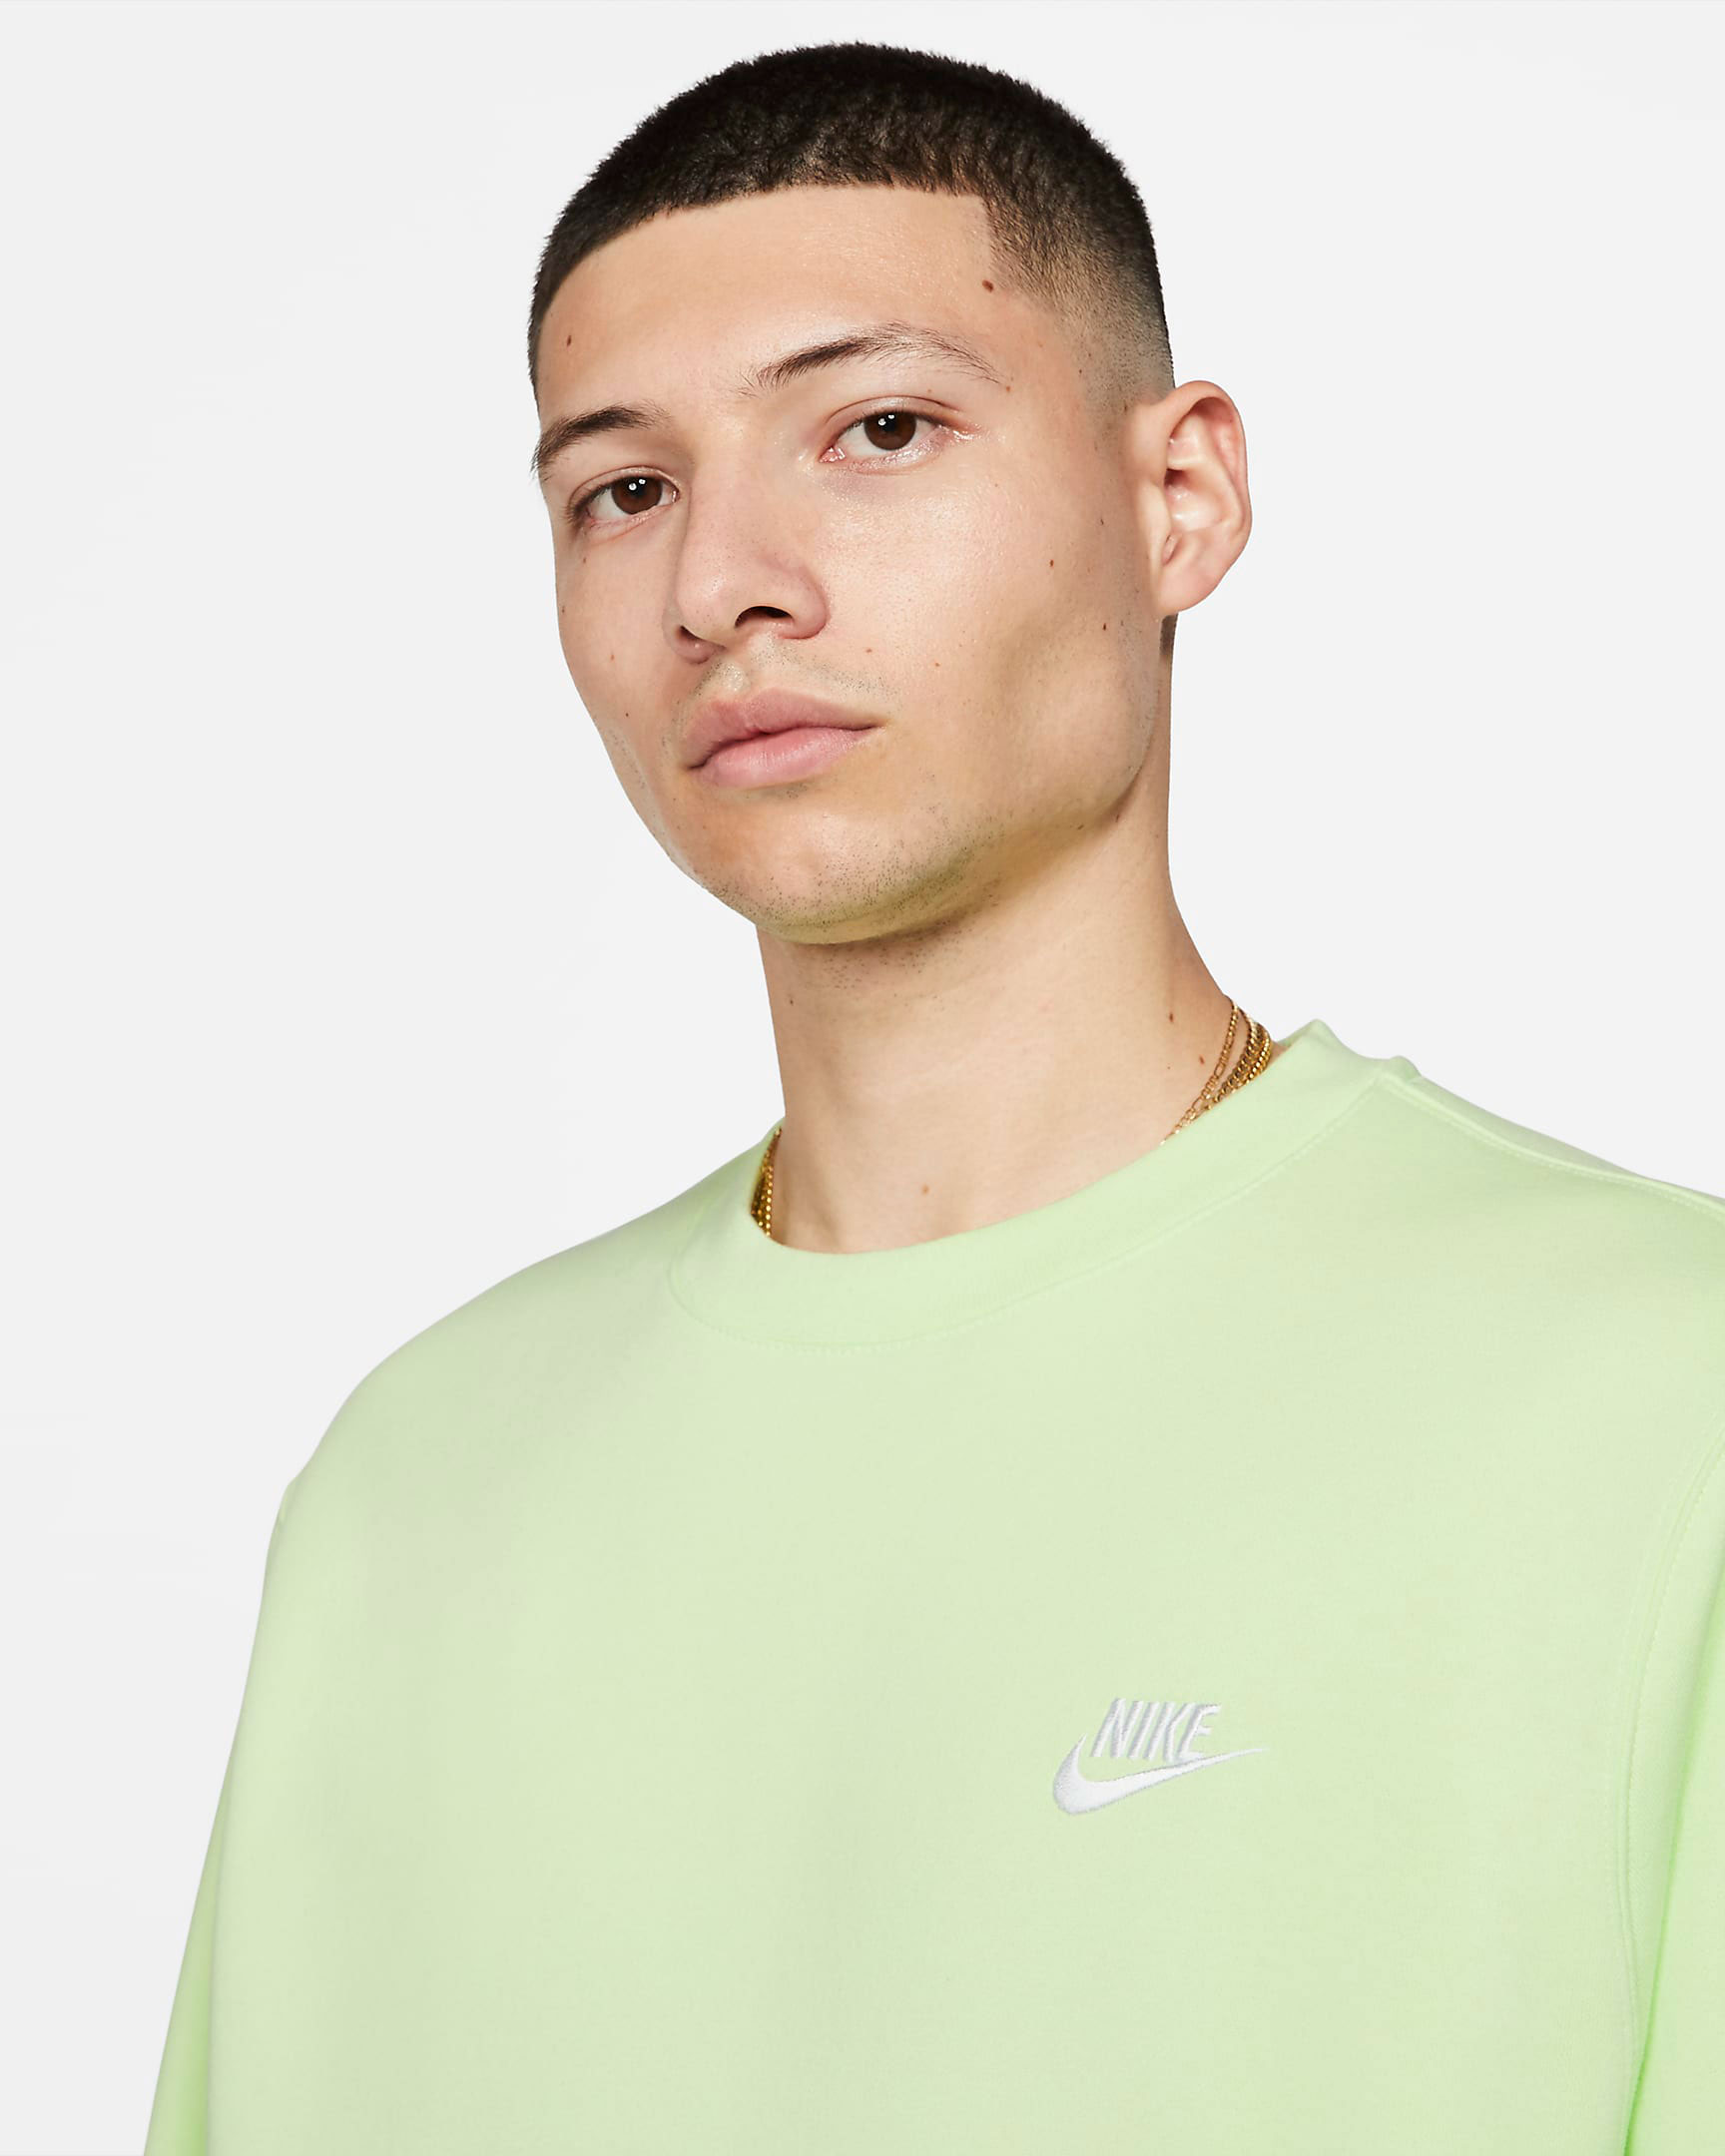 Nike Sportswear Fleece “Light Liquid Lime” Apparel Including Sweatshirt, Hoodie & |